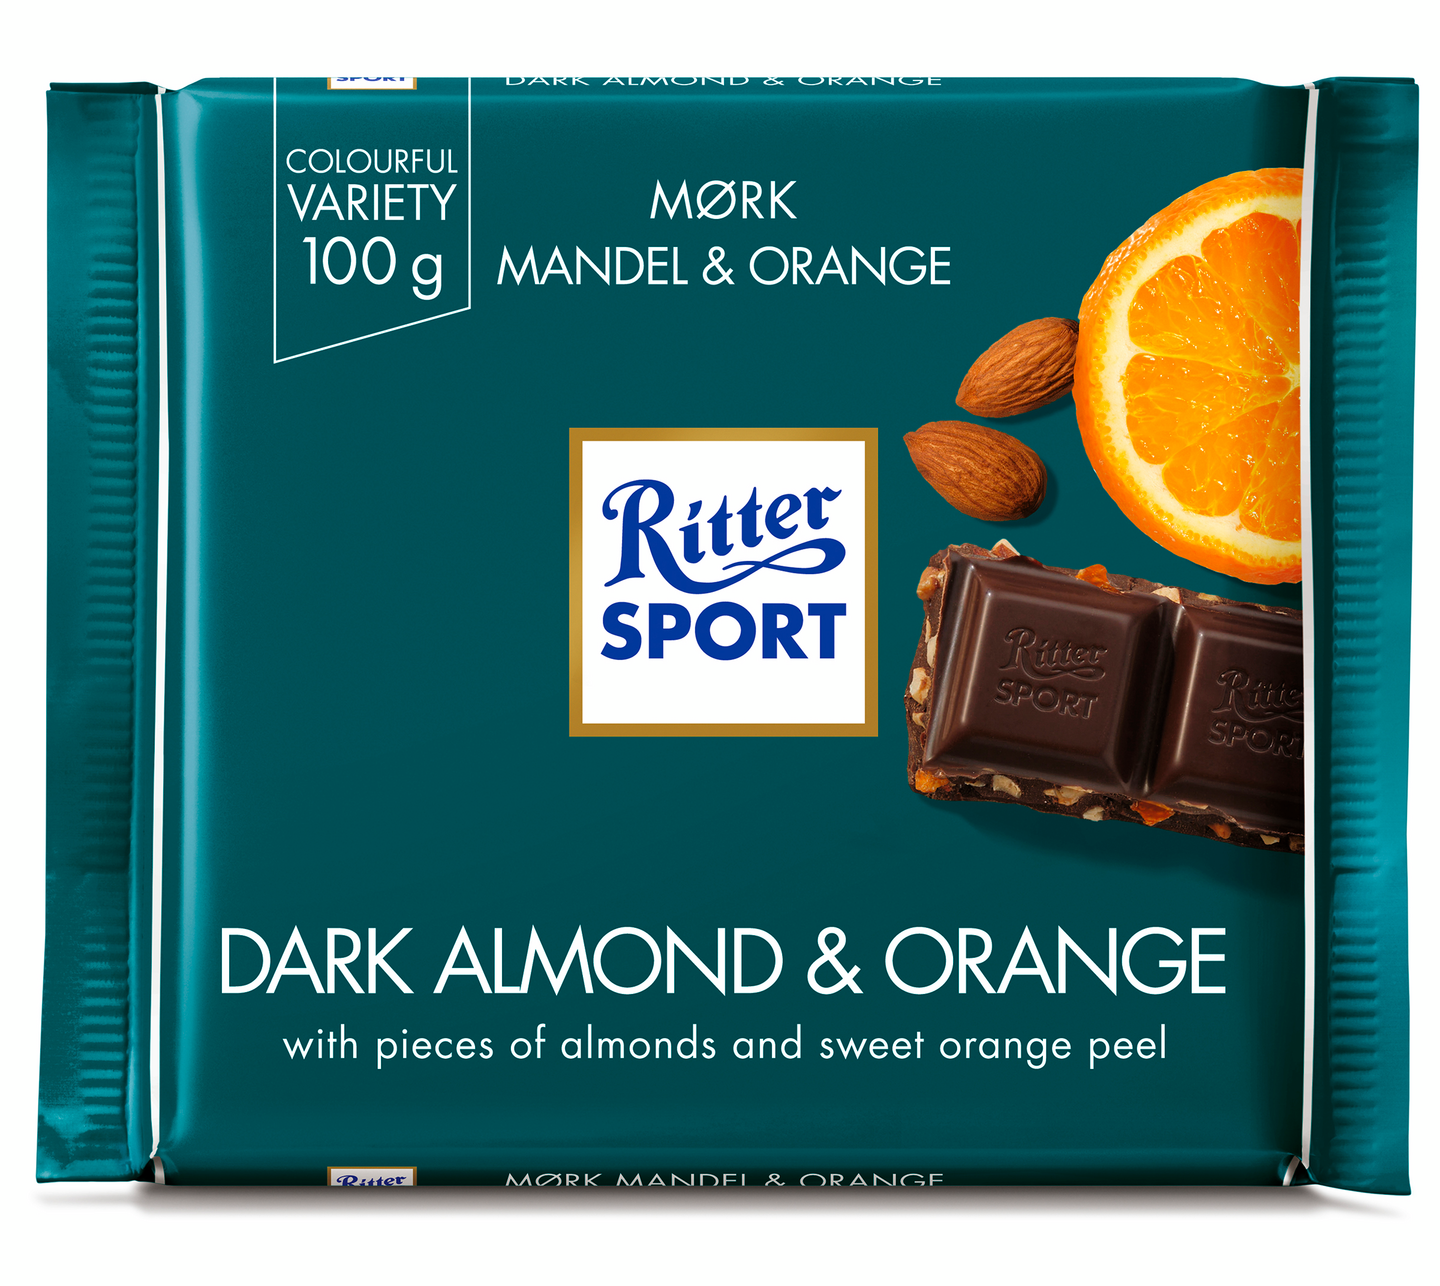 Ritter Sport 100g Mandel Orange